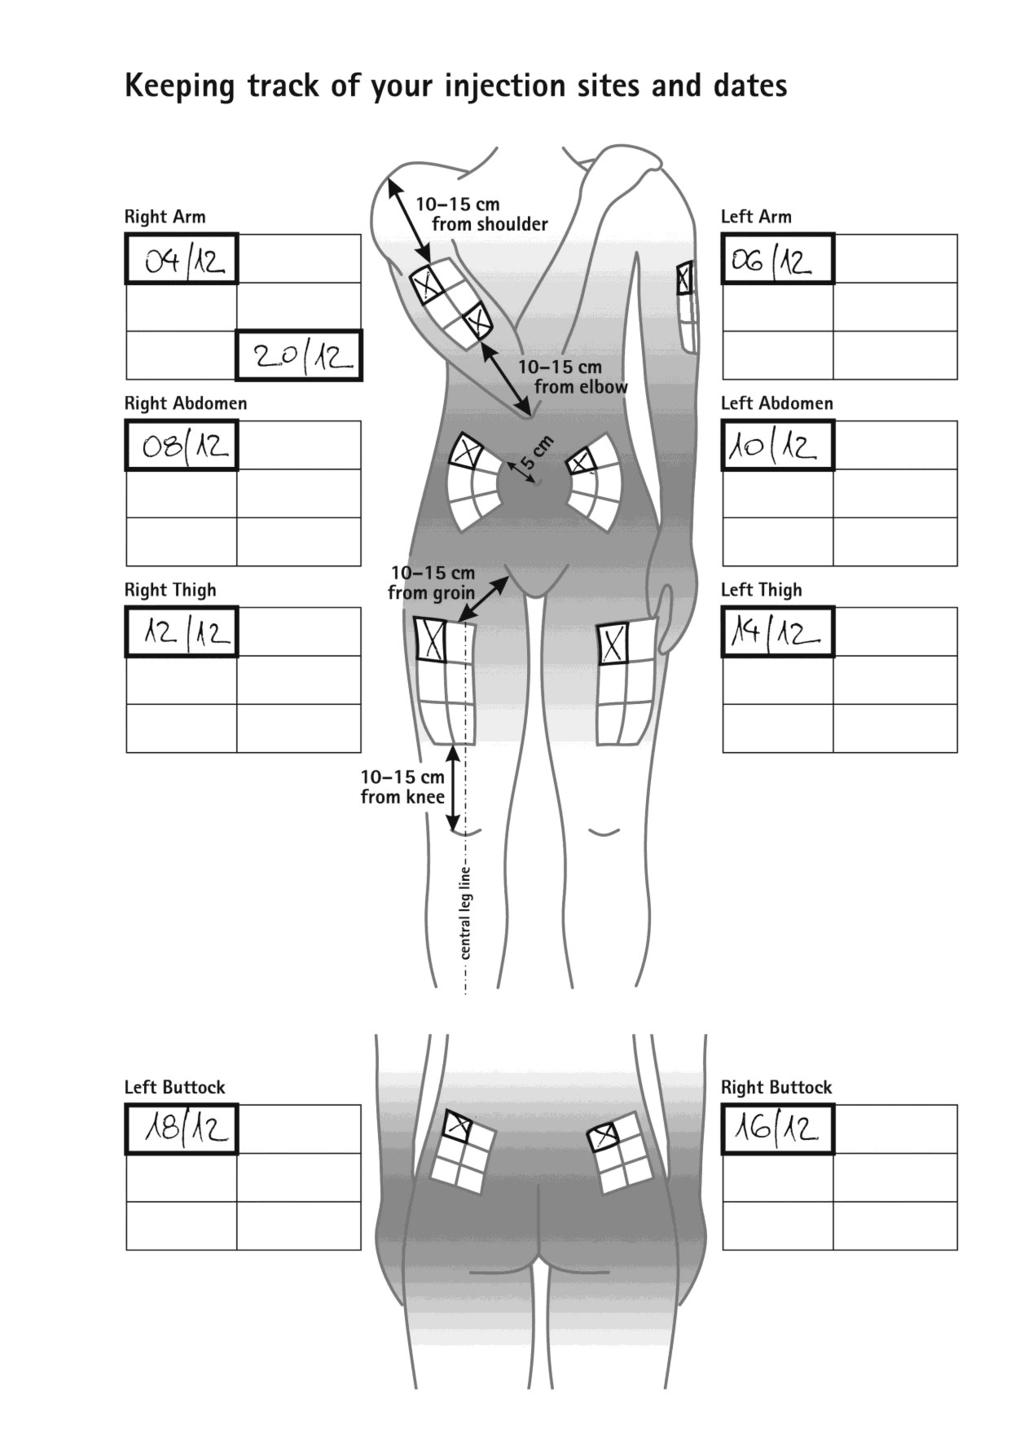 INJEKCIJU PIERAKSTA PIEMĒRS: Injekciju vietu un datumu dokumentēšana Labā roka 10--15 cm no pleca Kreisā roka Vēdera labā puse 10-15 cm no